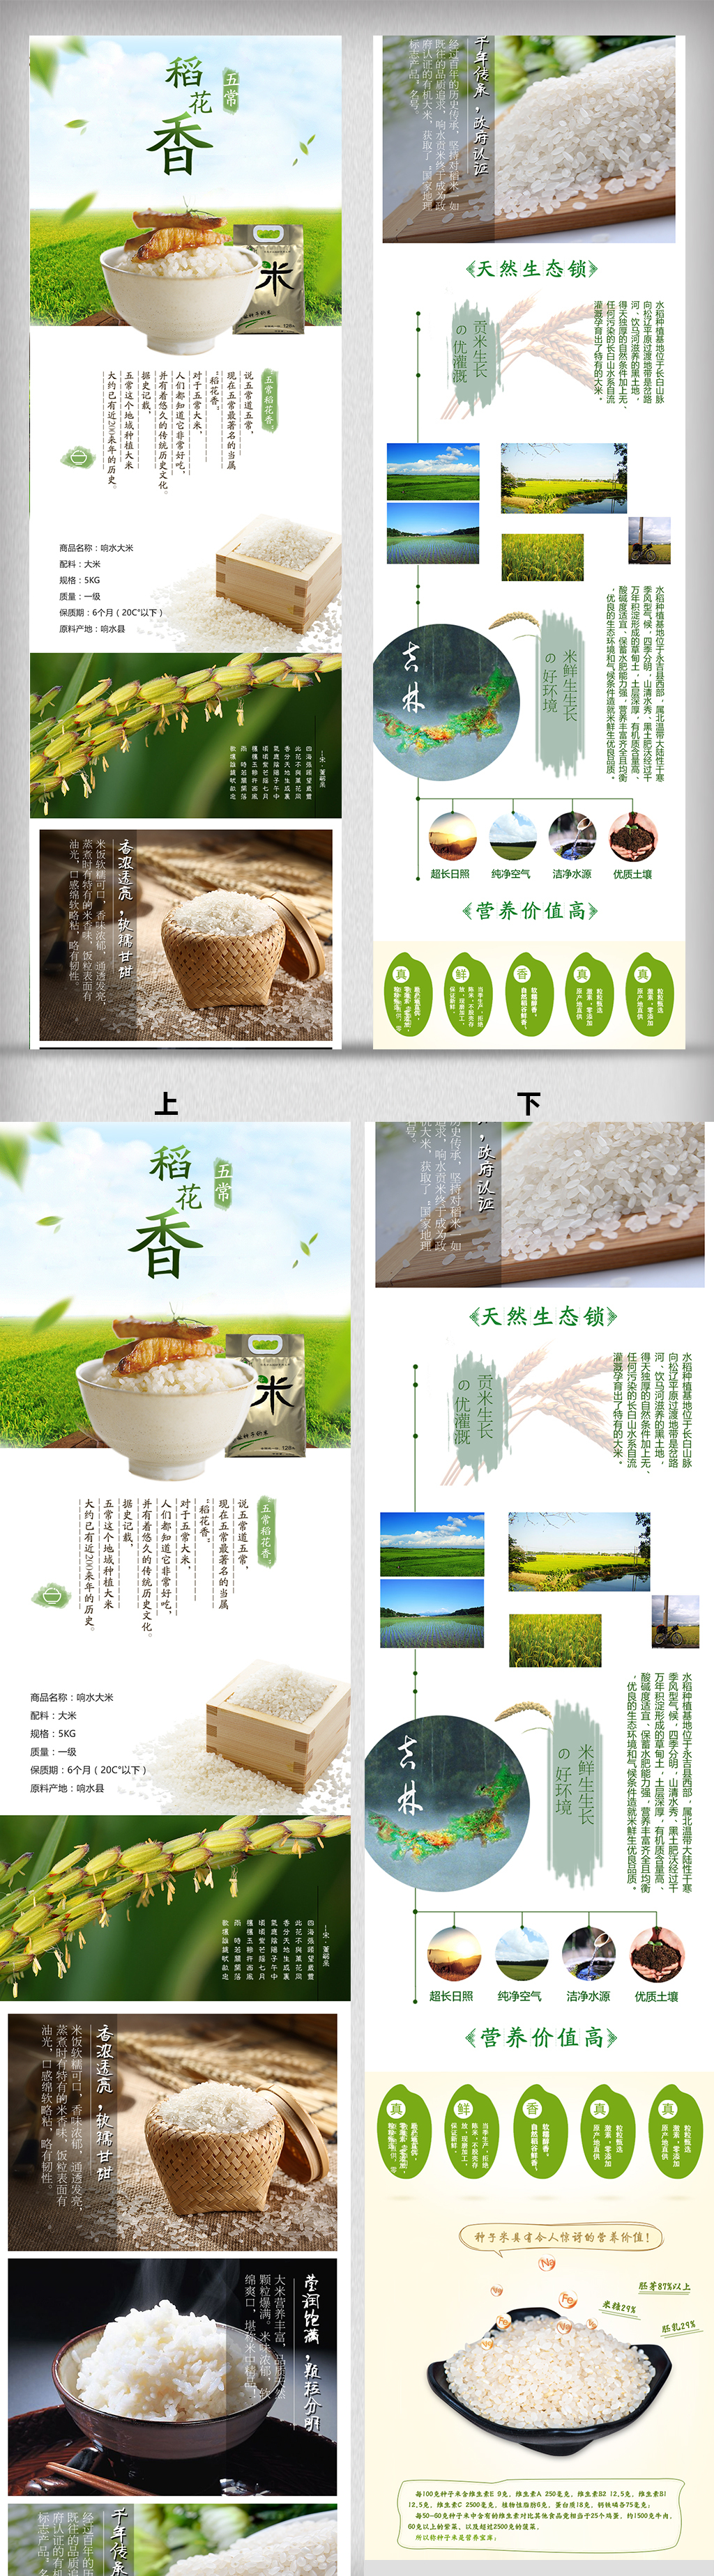 绿色食品大米详情页设计图片